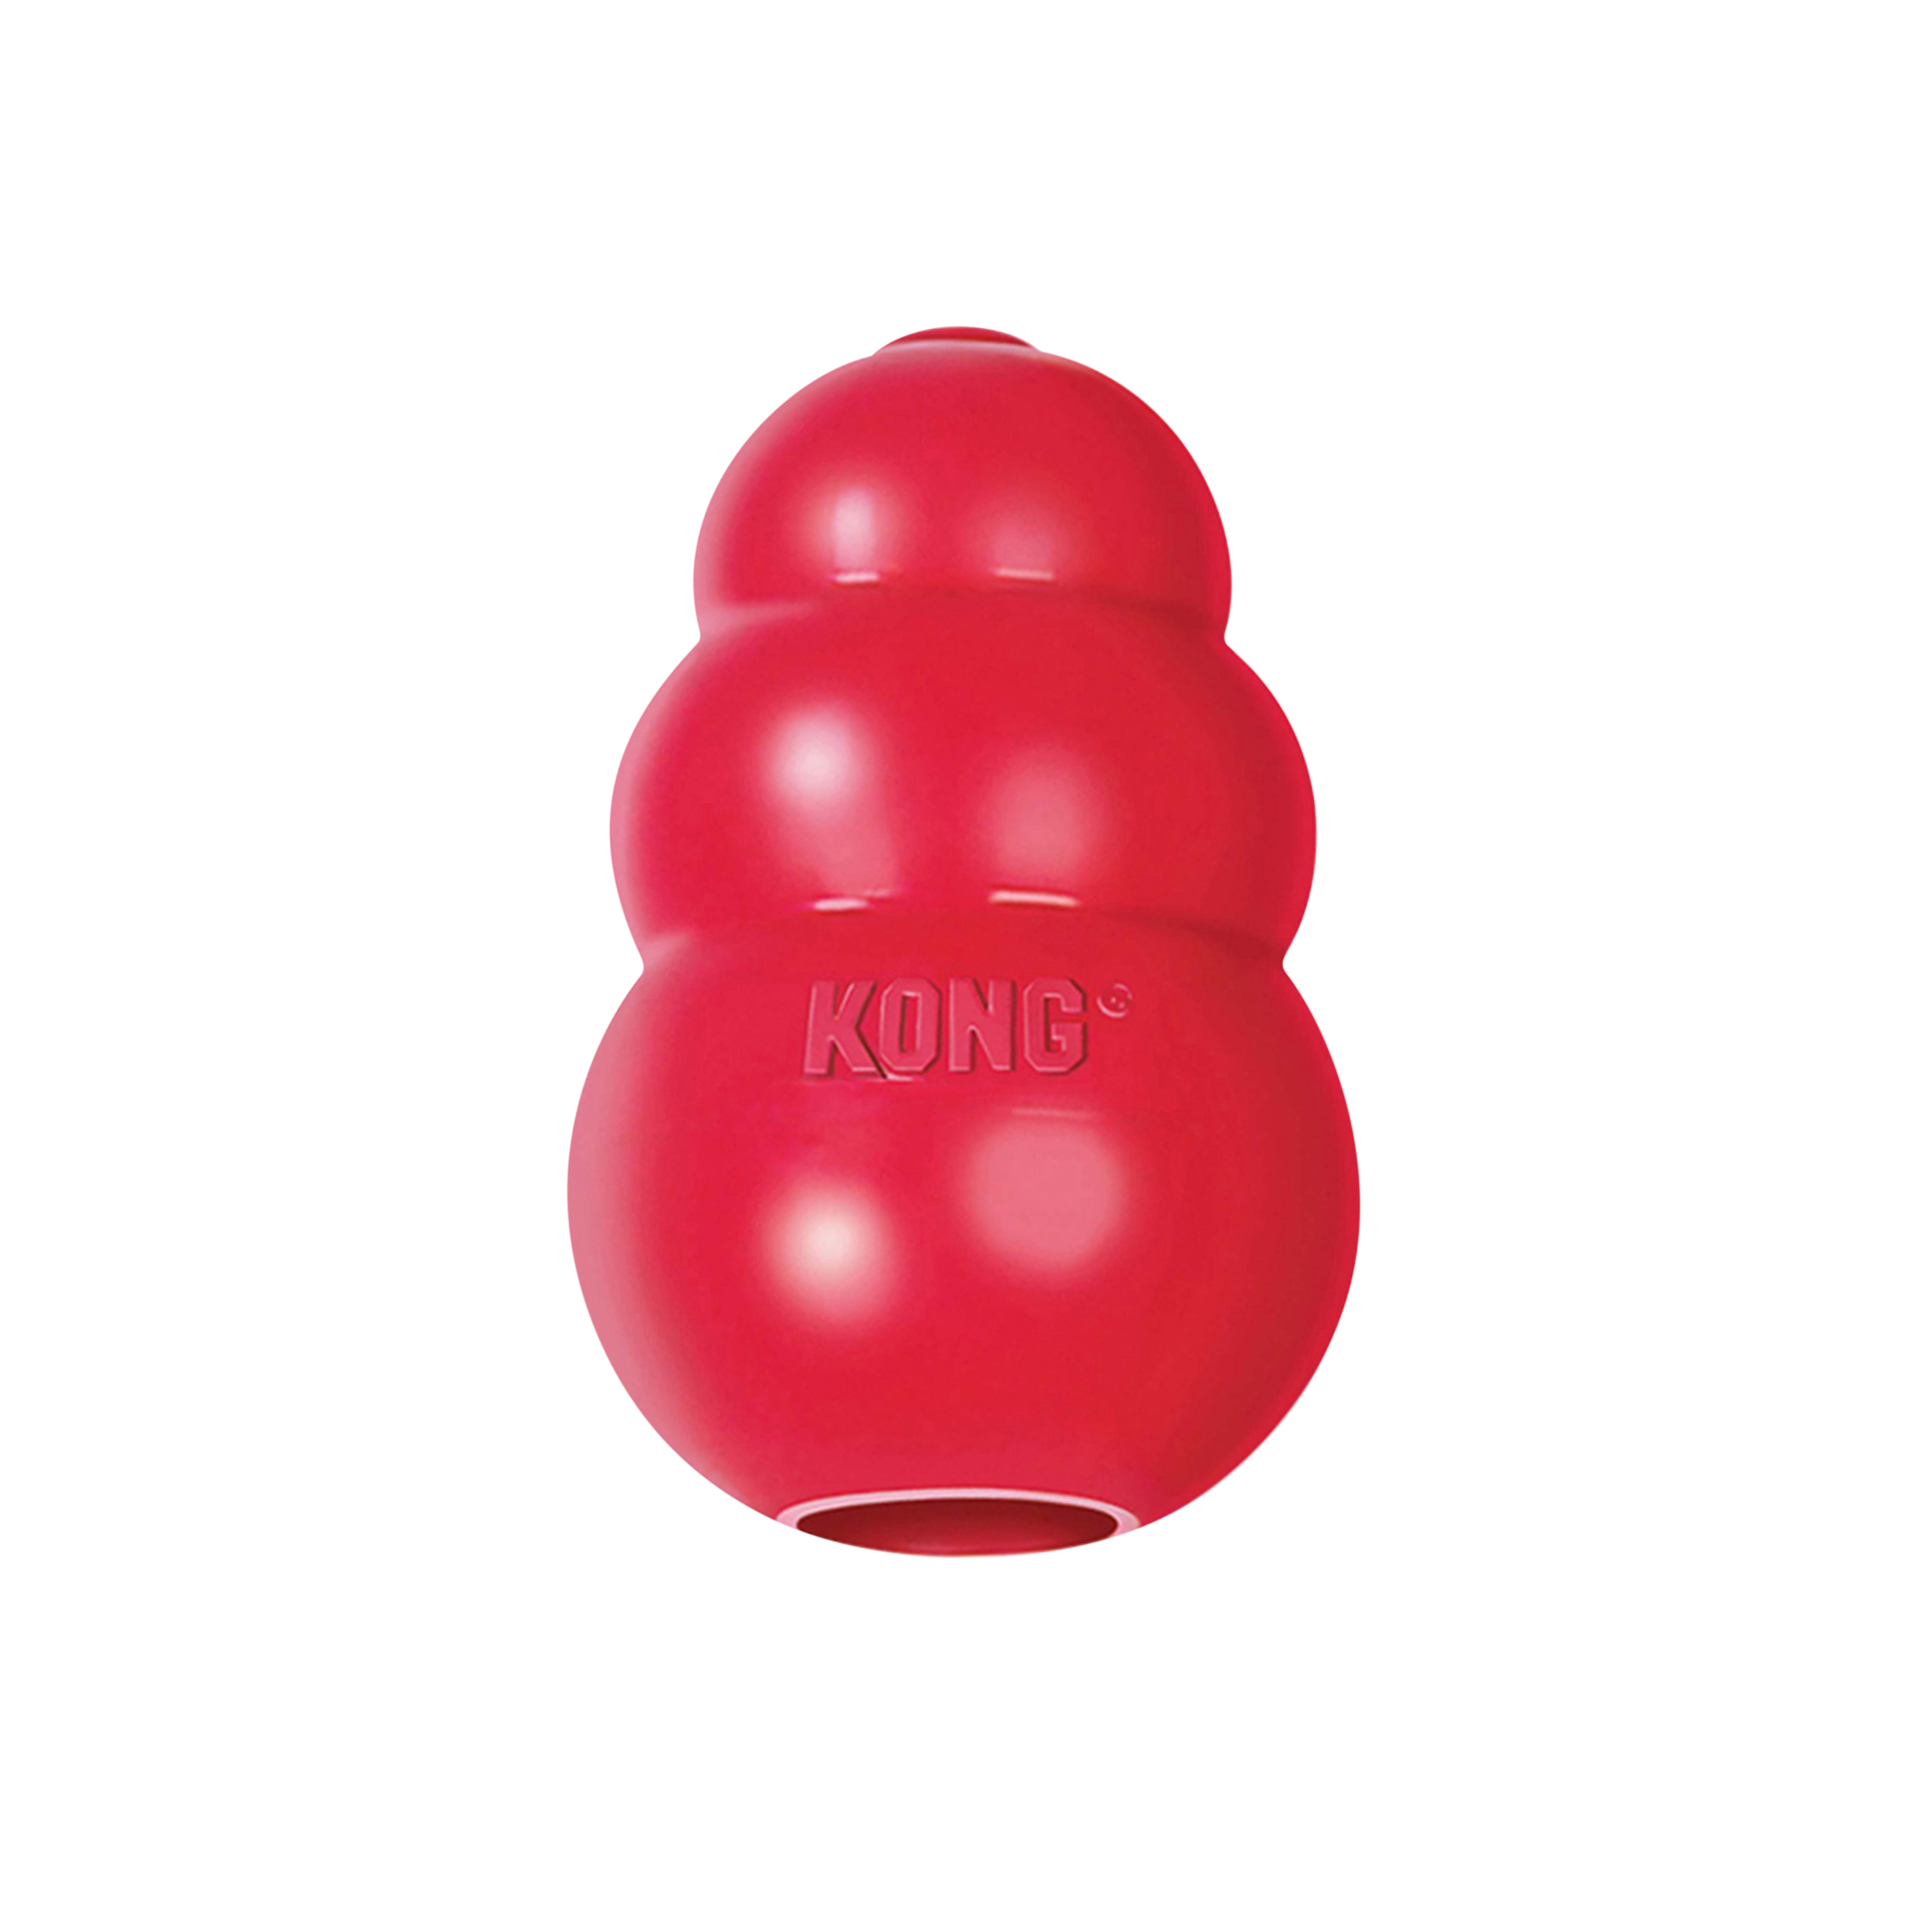 Kong Senior Chew Toy 